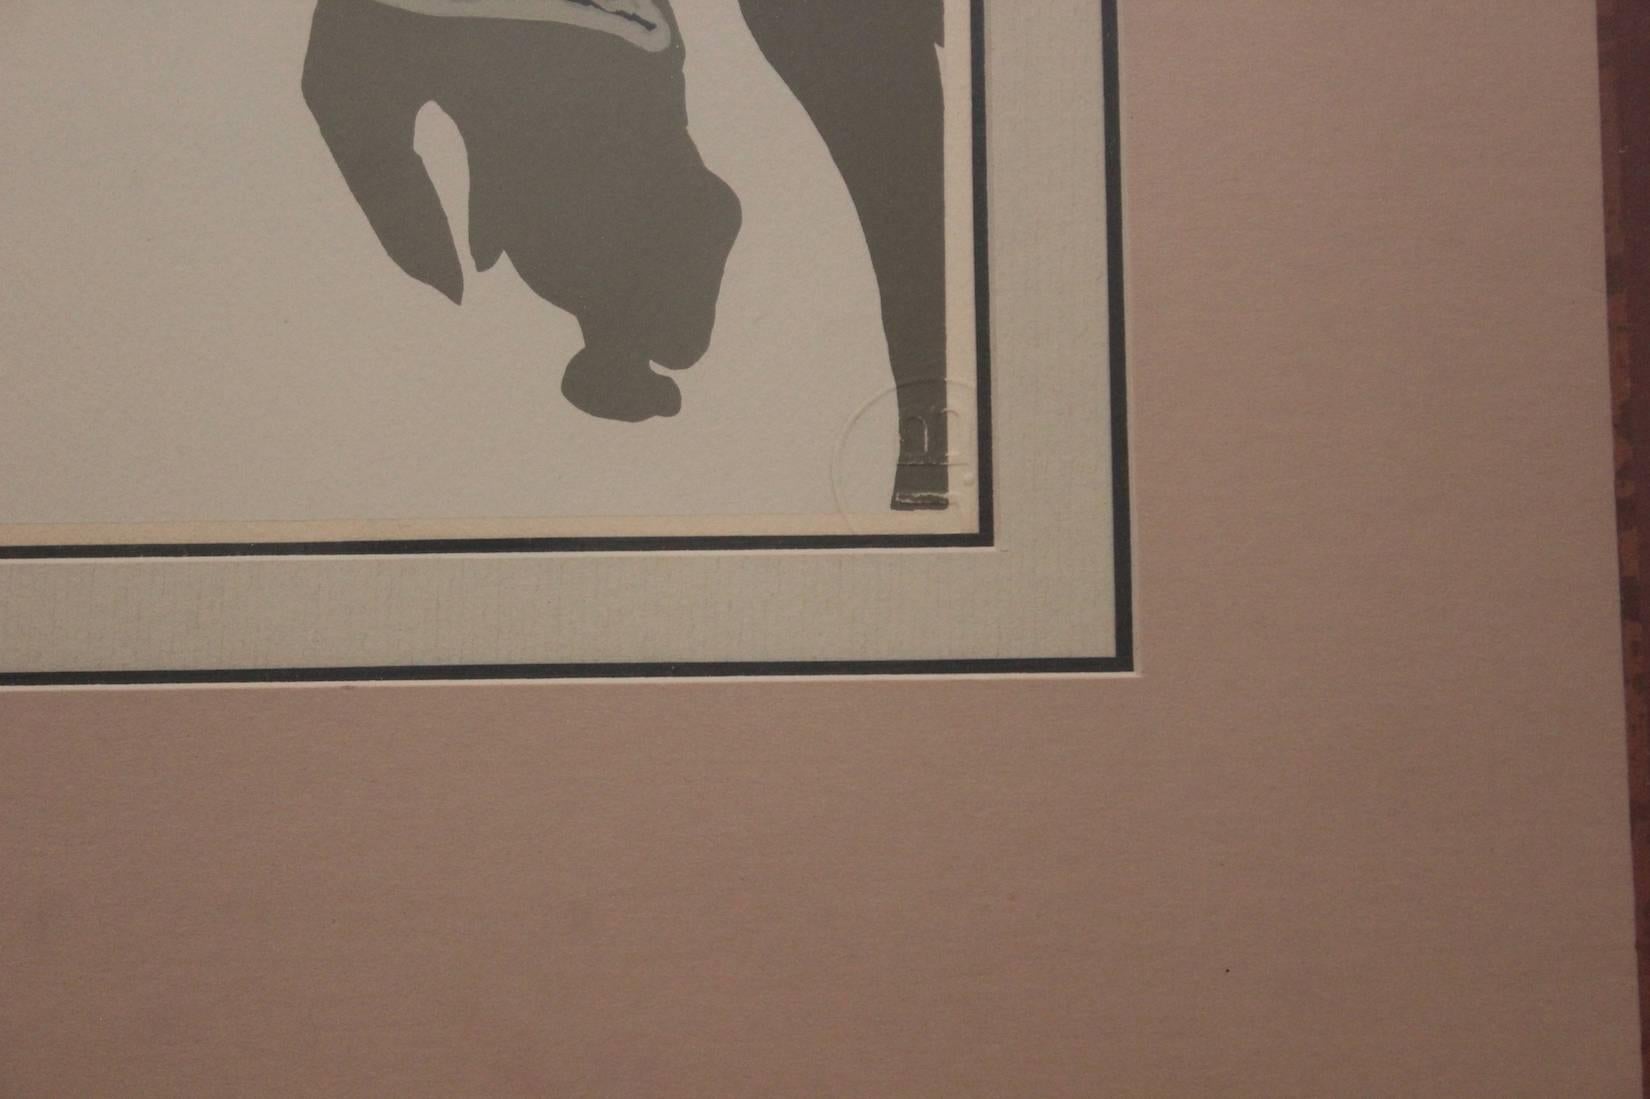 Sérigraphie colorée surréaliste de l'artiste Jean Lurcat vers 1933 d'un personnage dans une pose rappelant celle d'une baigneuse. Cachet de l'éditeur, recto ; étiquette de l'éditeur, verso.  

Dimensions sans cadre : H 12 in. x L 8.5 in.